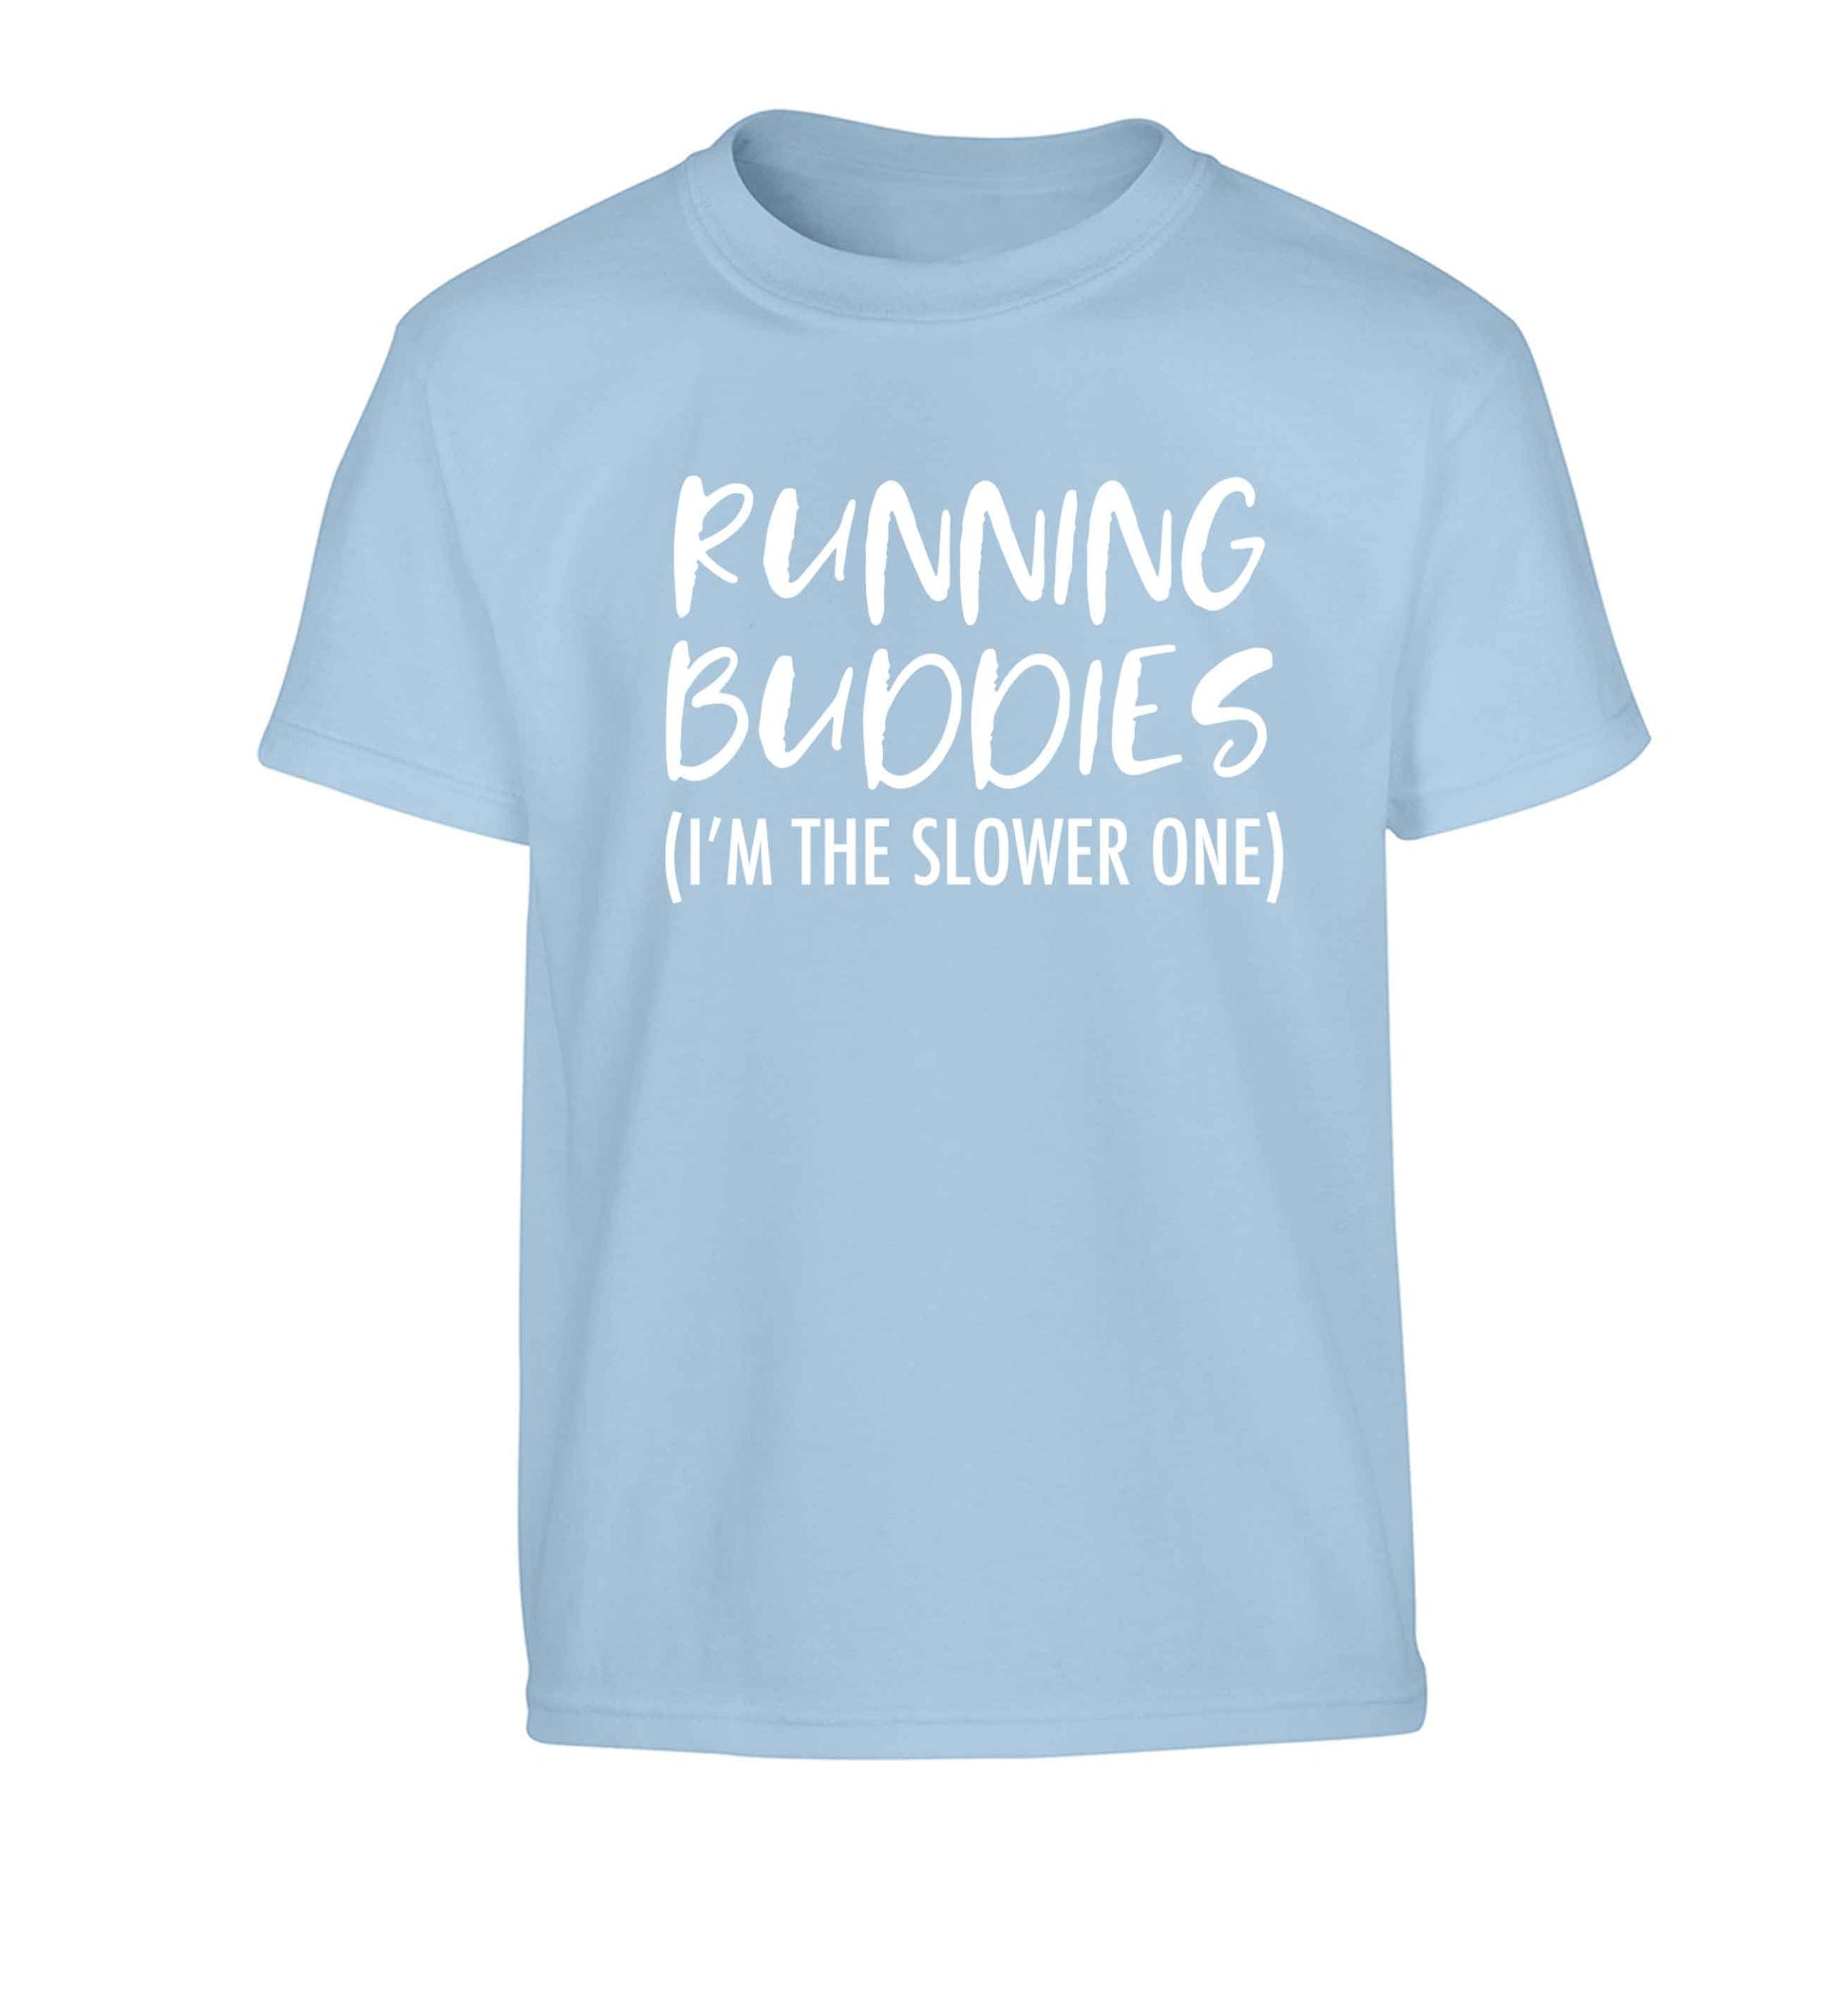 Running buddies (I'm the slower one) Children's light blue Tshirt 12-13 Years